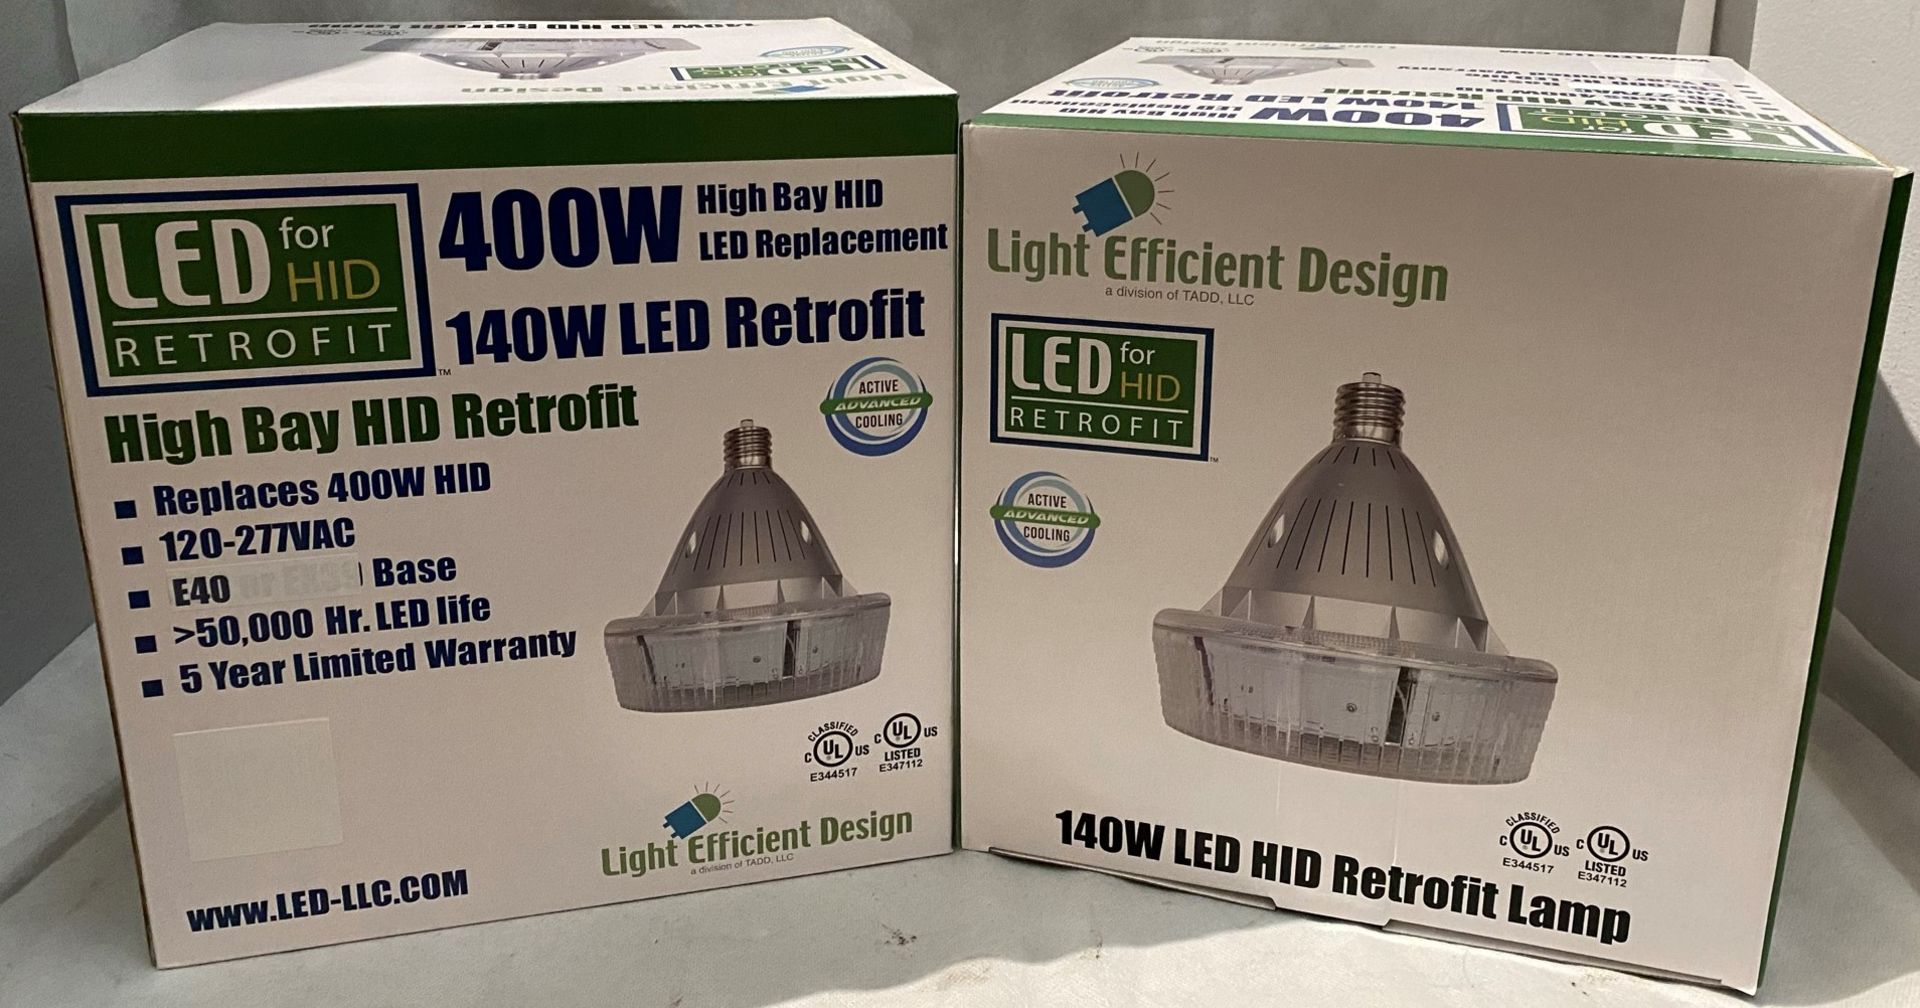 13 x Light Efficient Design LED-8030-DL-E40 140W LED HID Retrofit High Bay lamps (5700k CCT) -